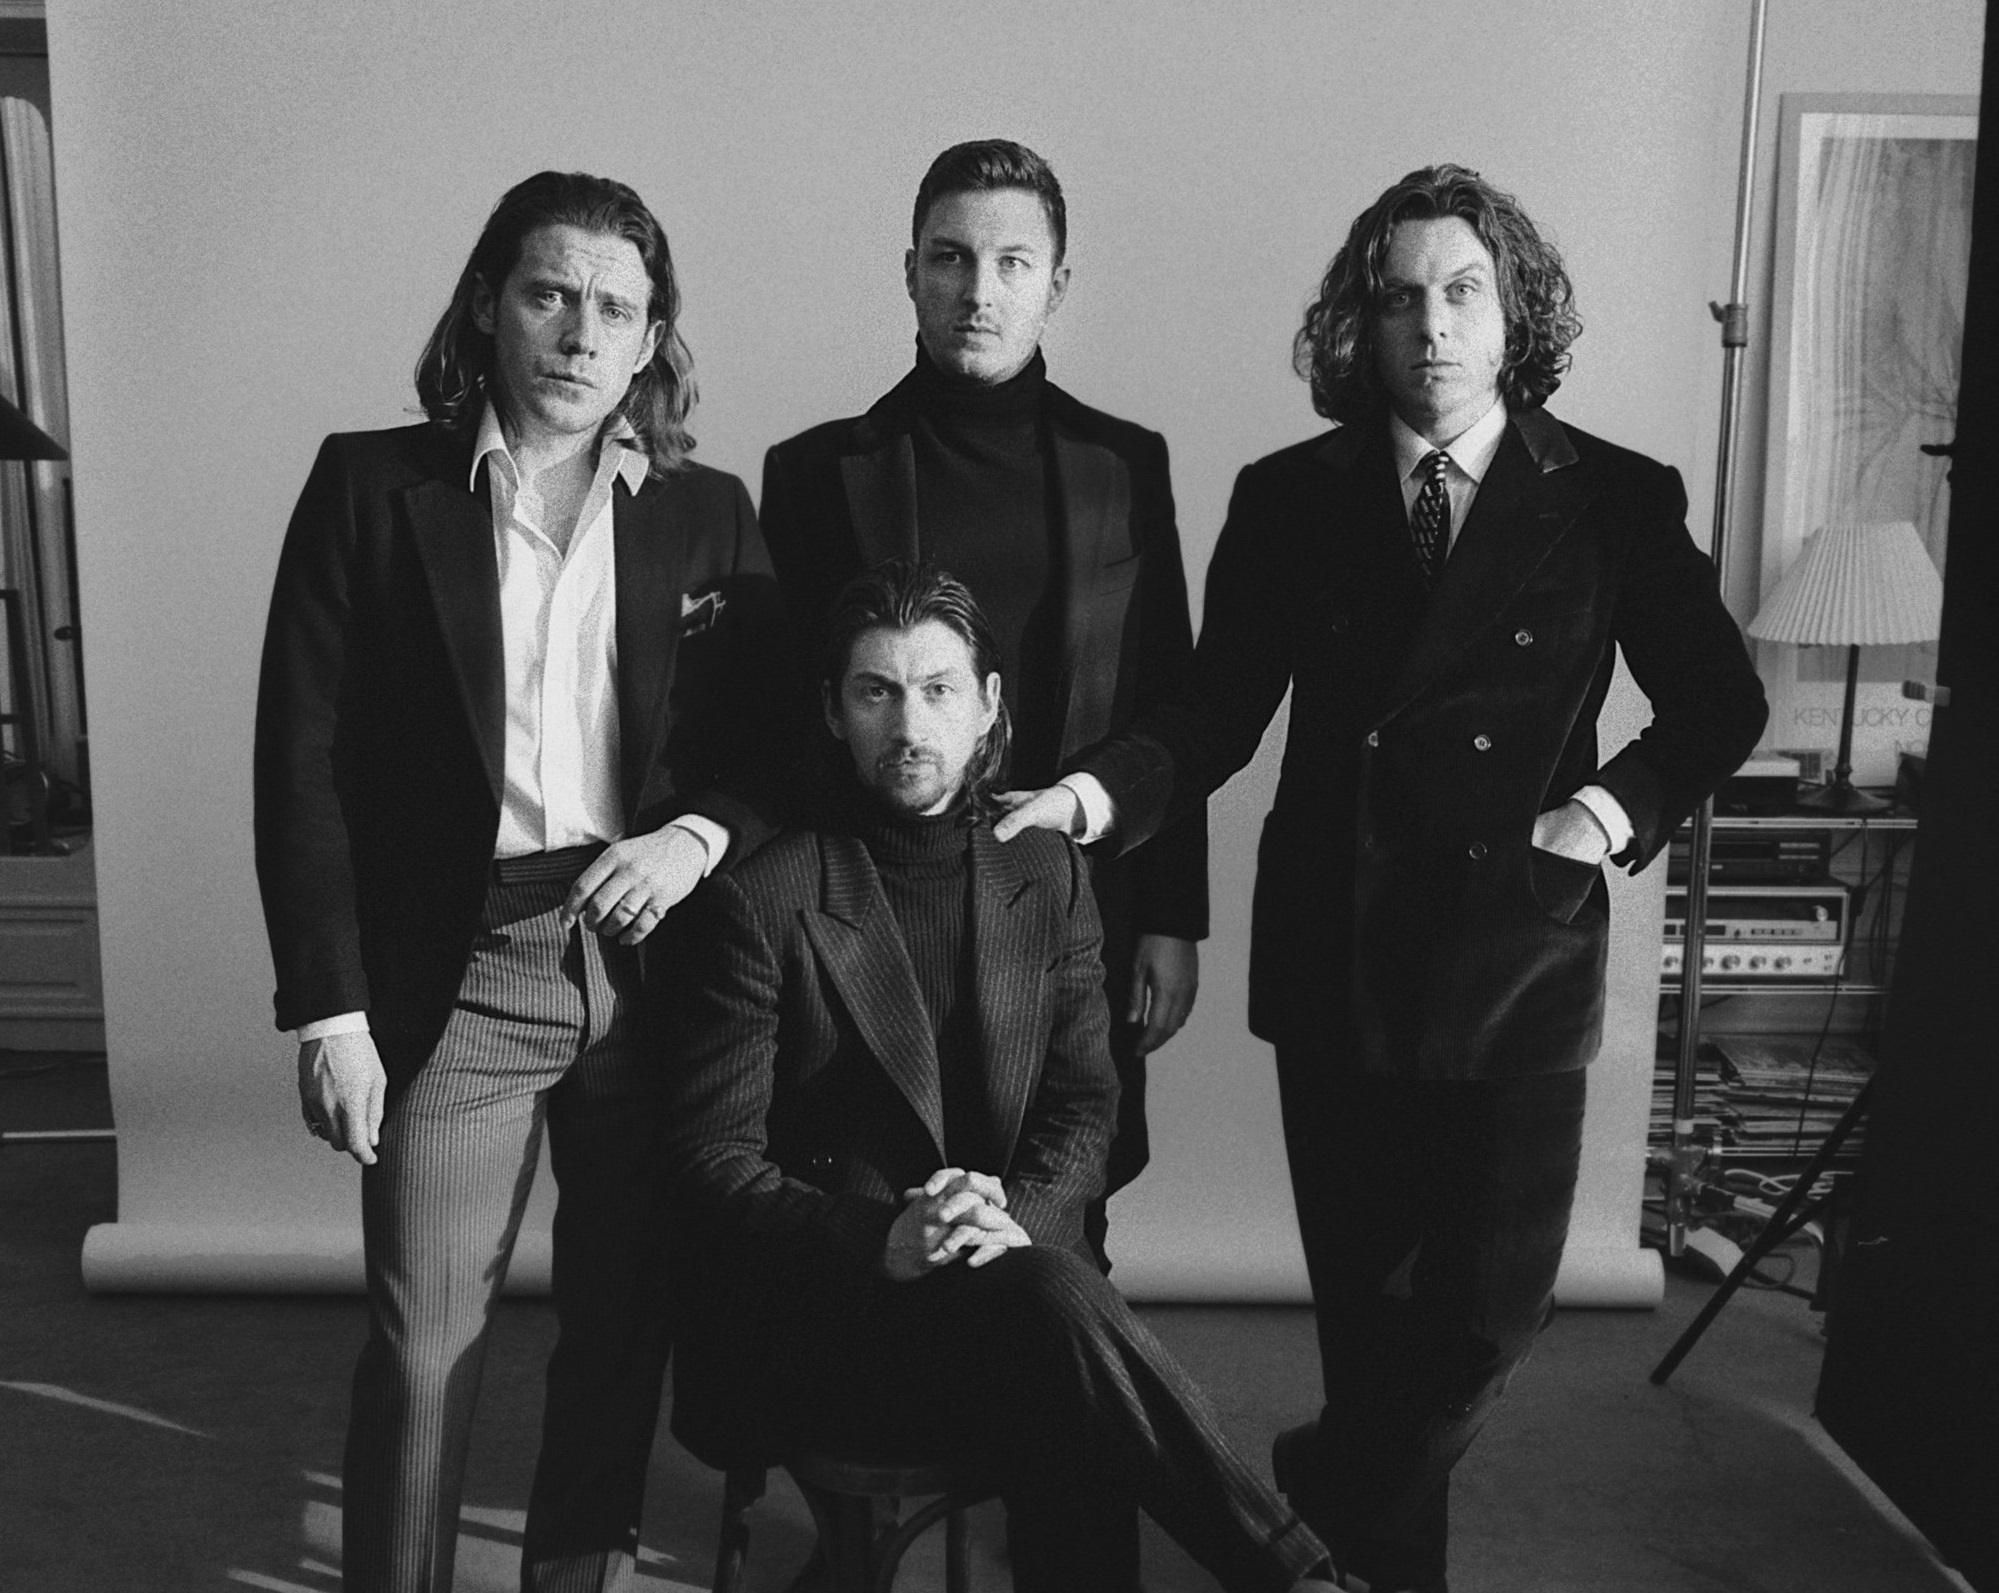 El regreso Arctic Monkeys anuncia “Tranquility Base Hotel & Casino